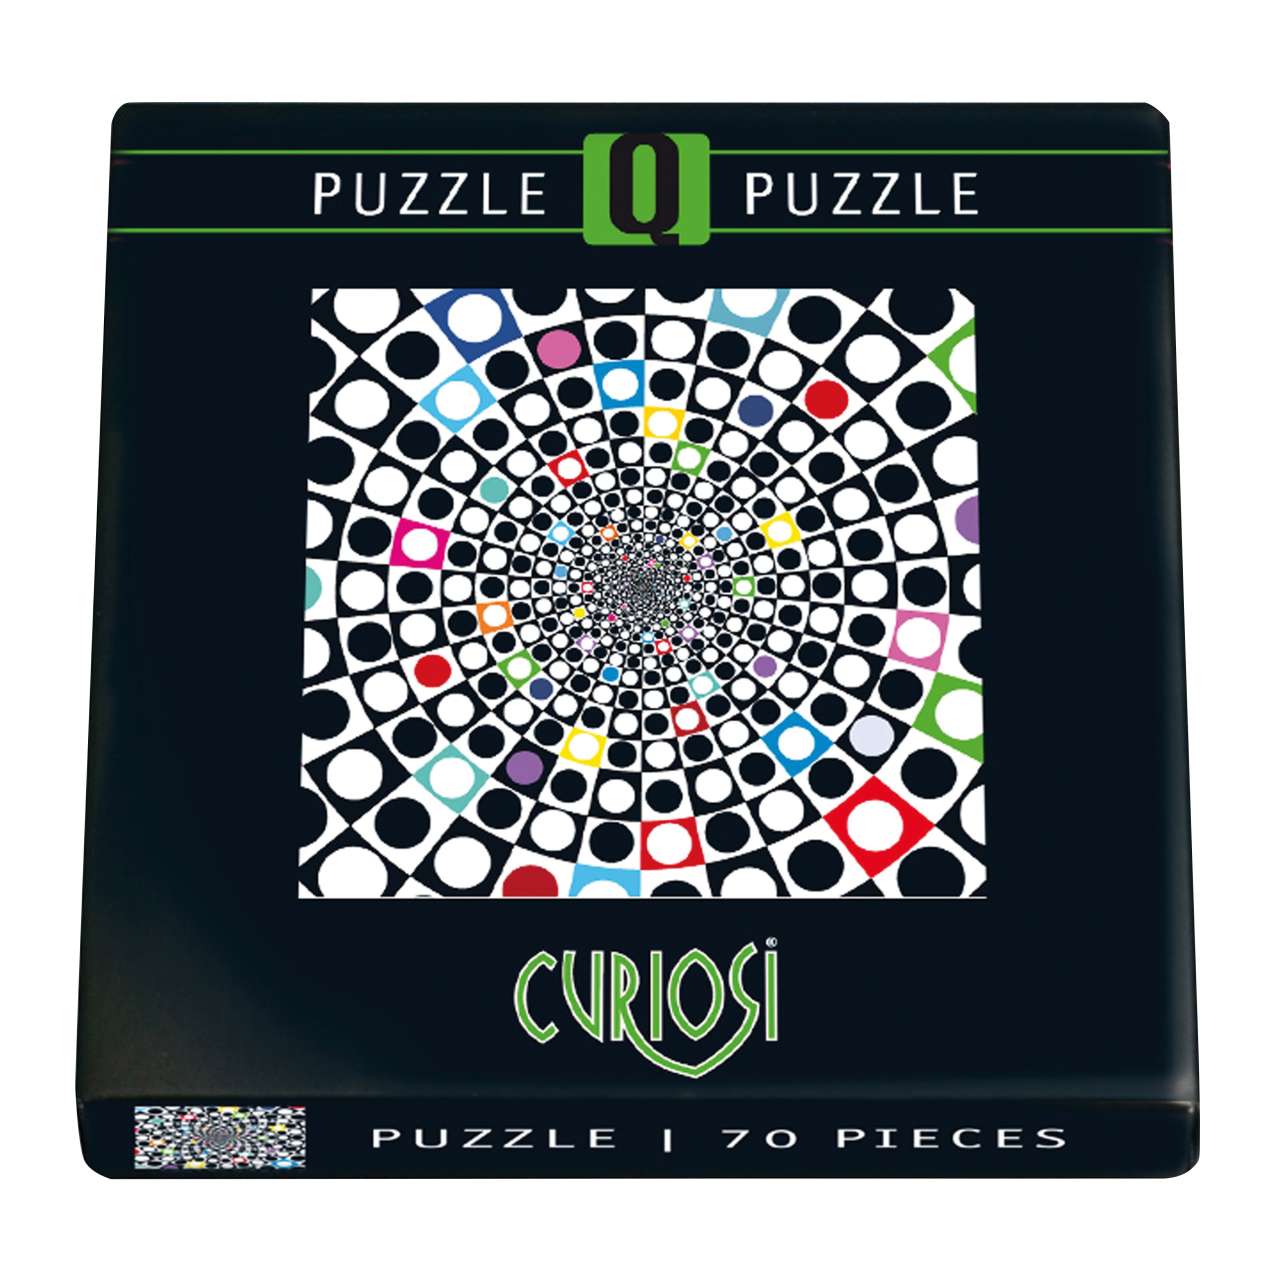 Q-Puzzle Pop 2